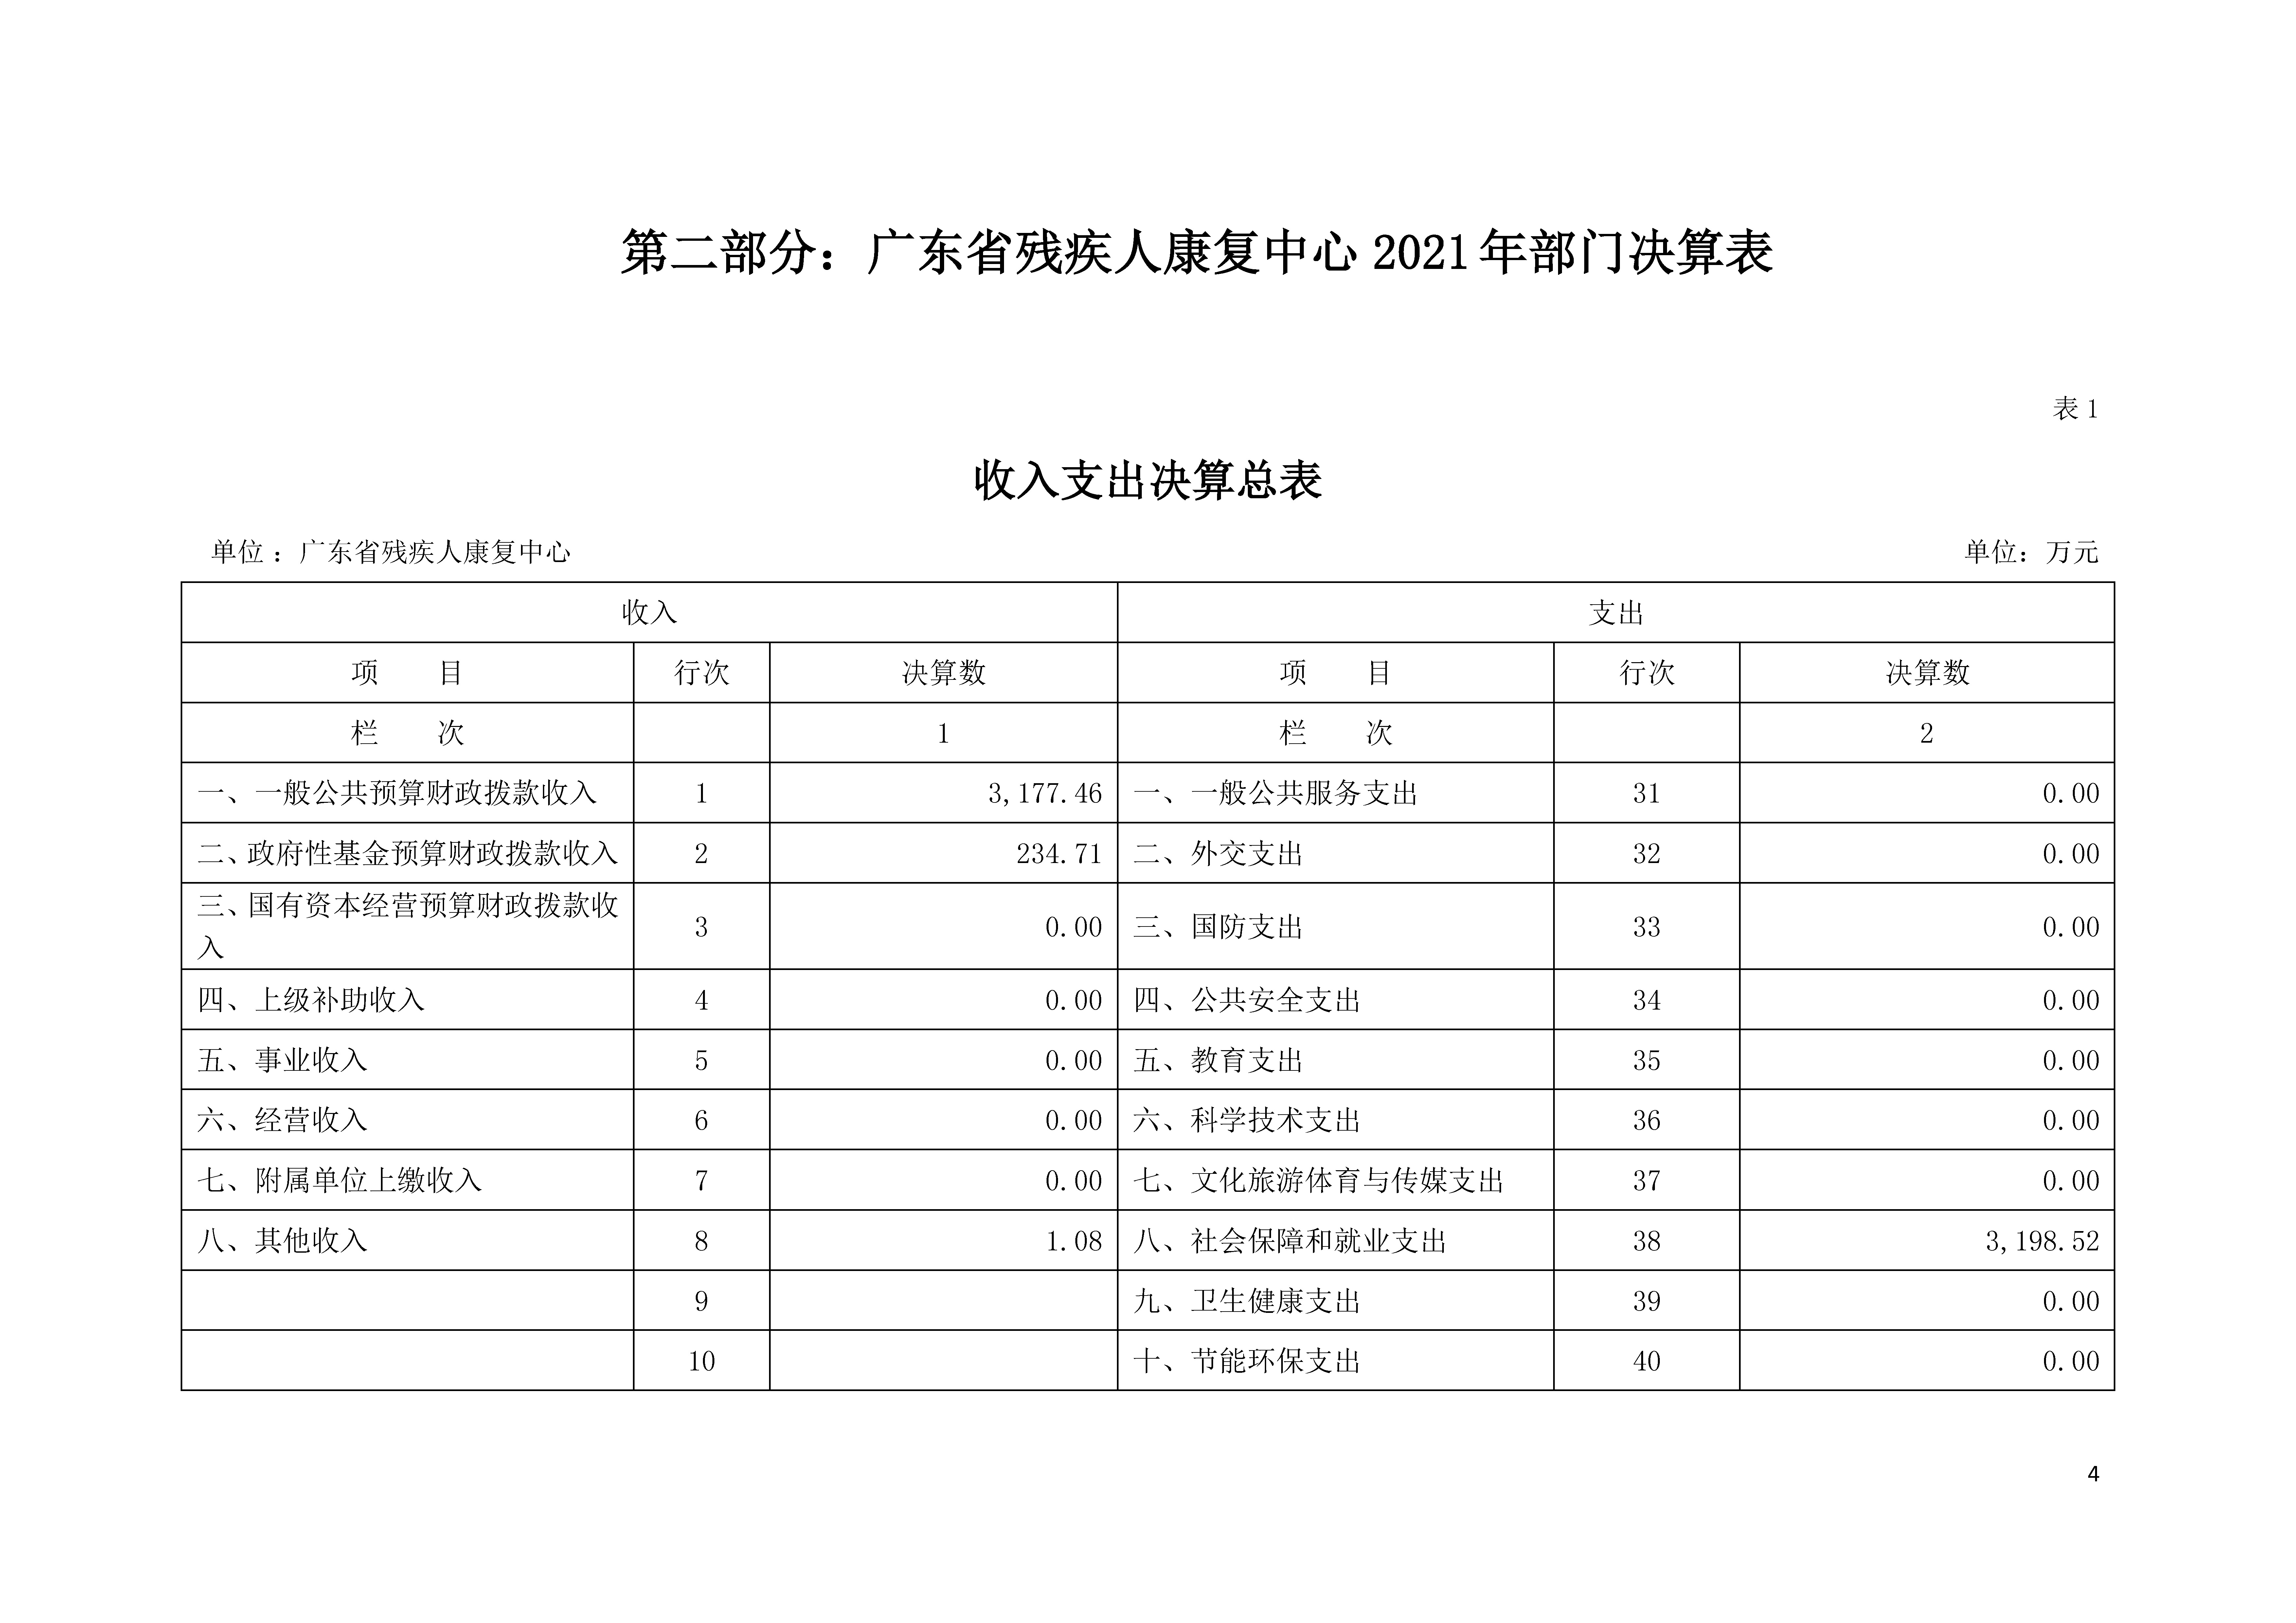 2021年广东省残疾人康复中心部门决算 0629_页面_04.jpg